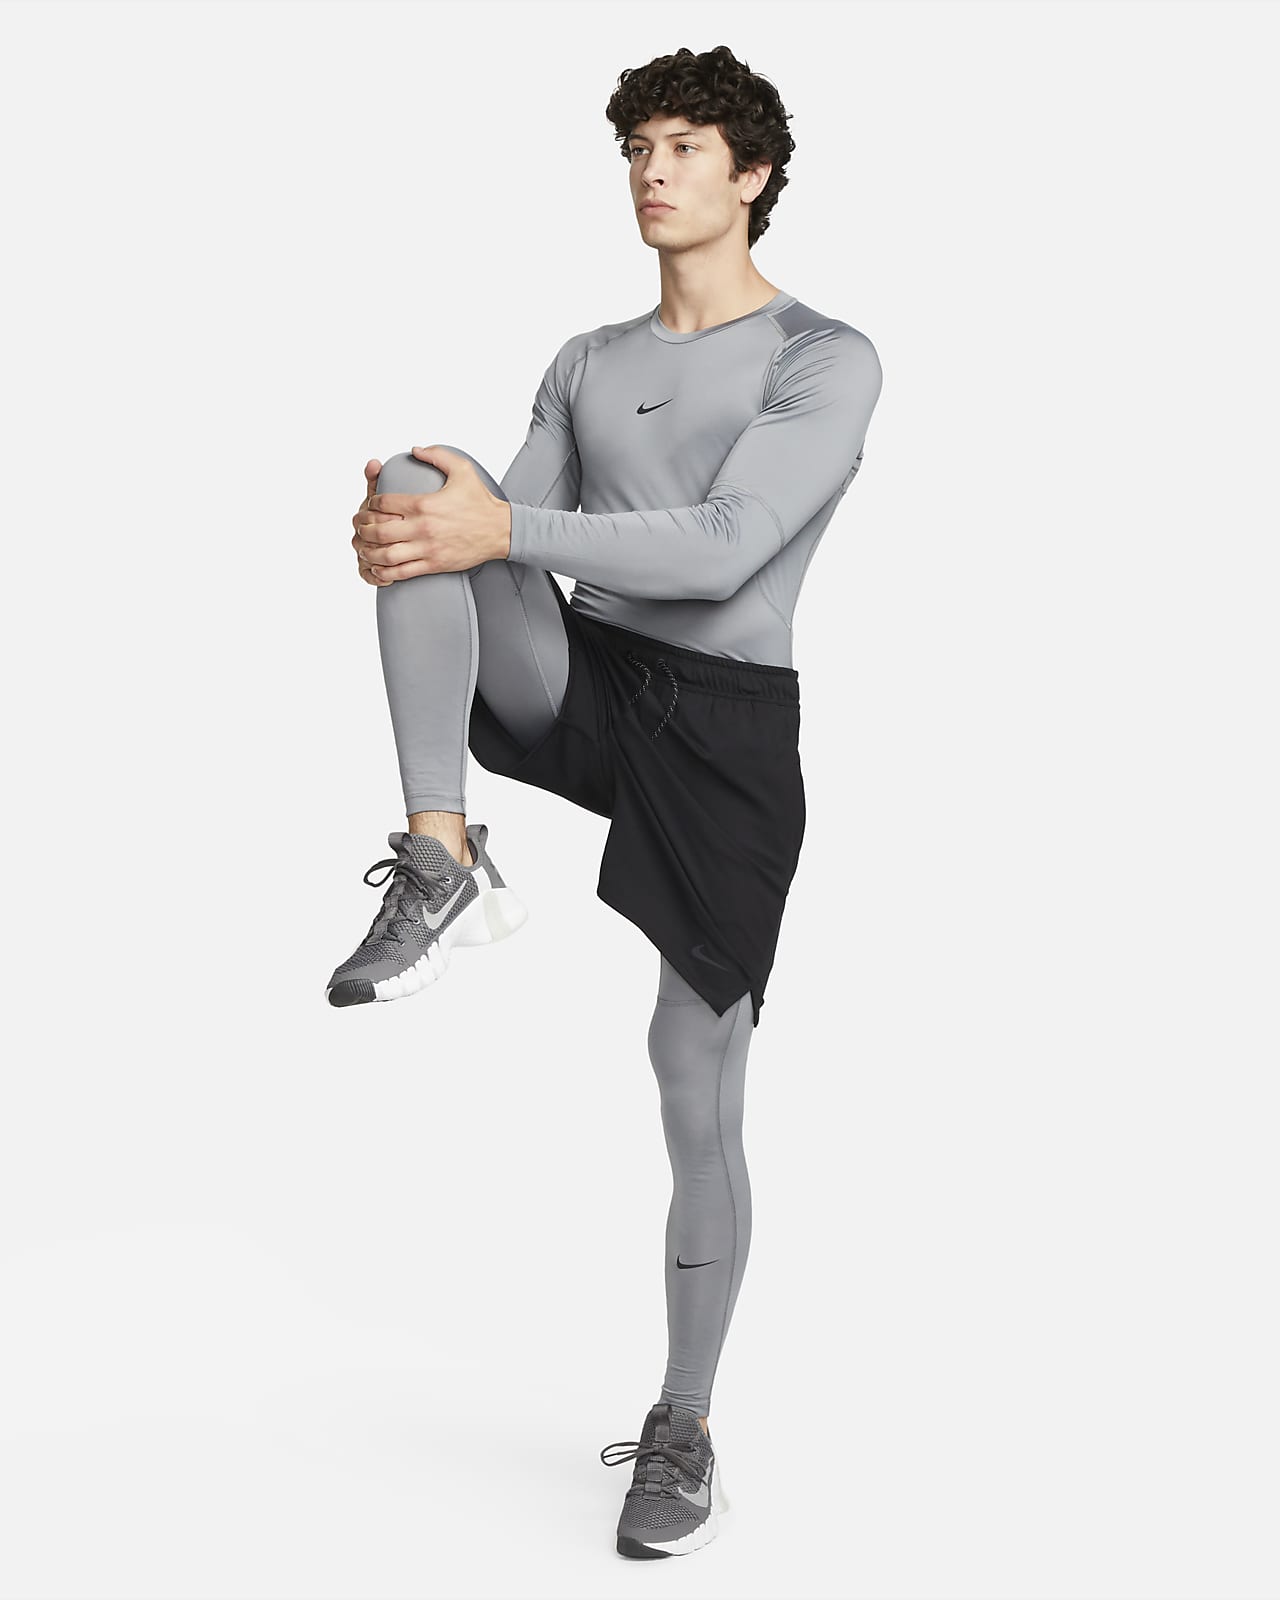 Nike Men's Pro Training Tights White/Black - S